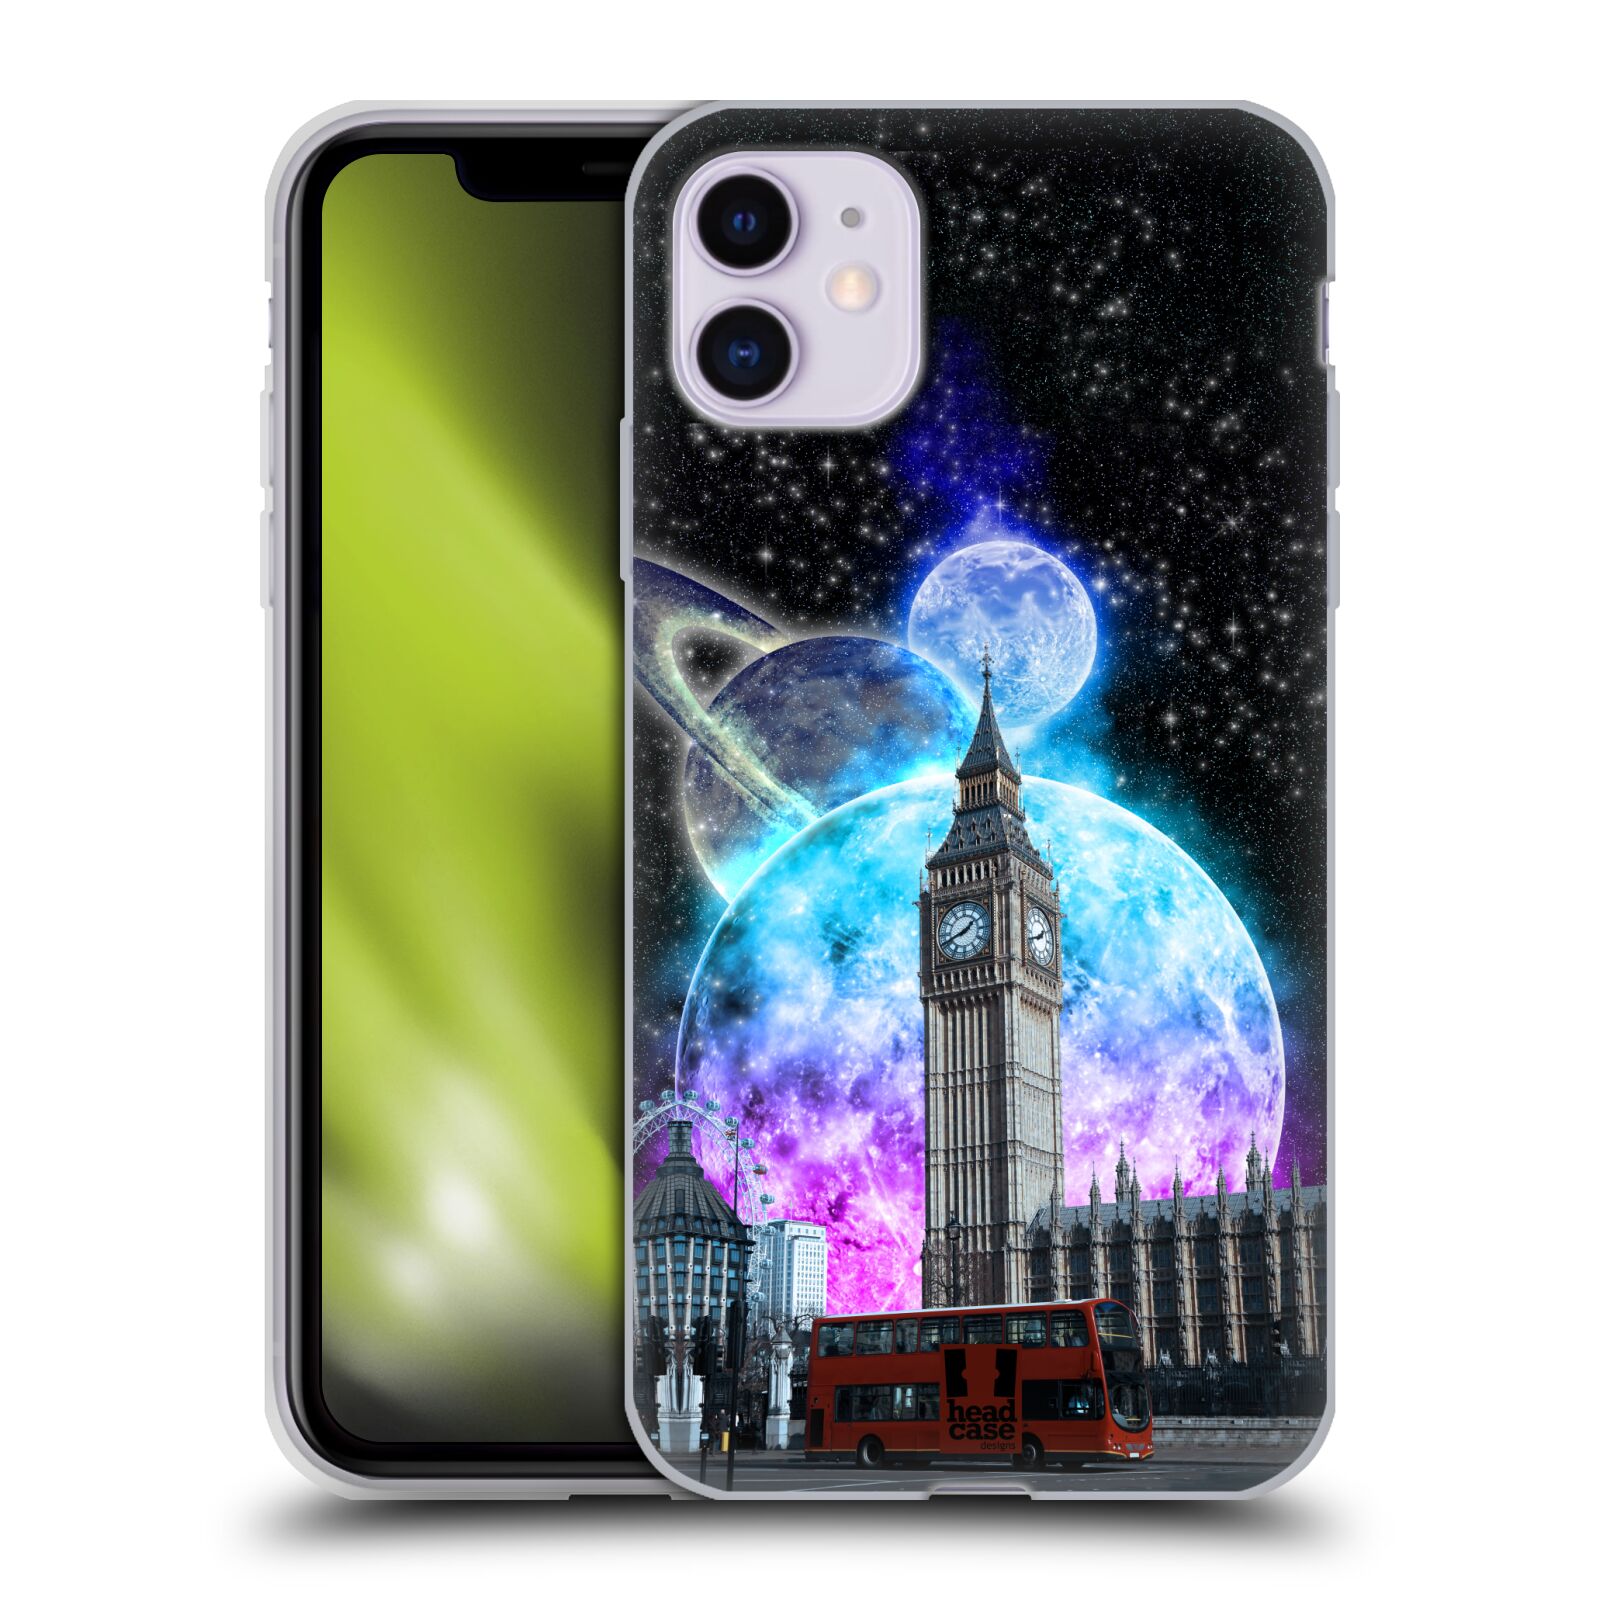 Silikonové pouzdro na mobil Apple iPhone 11 - Head Case - Měsíční Londýn (Silikonový kryt, obal, pouzdro na mobilní telefon Apple iPhone 11 s displejem 6,1" s motivem Měsíční Londýn)